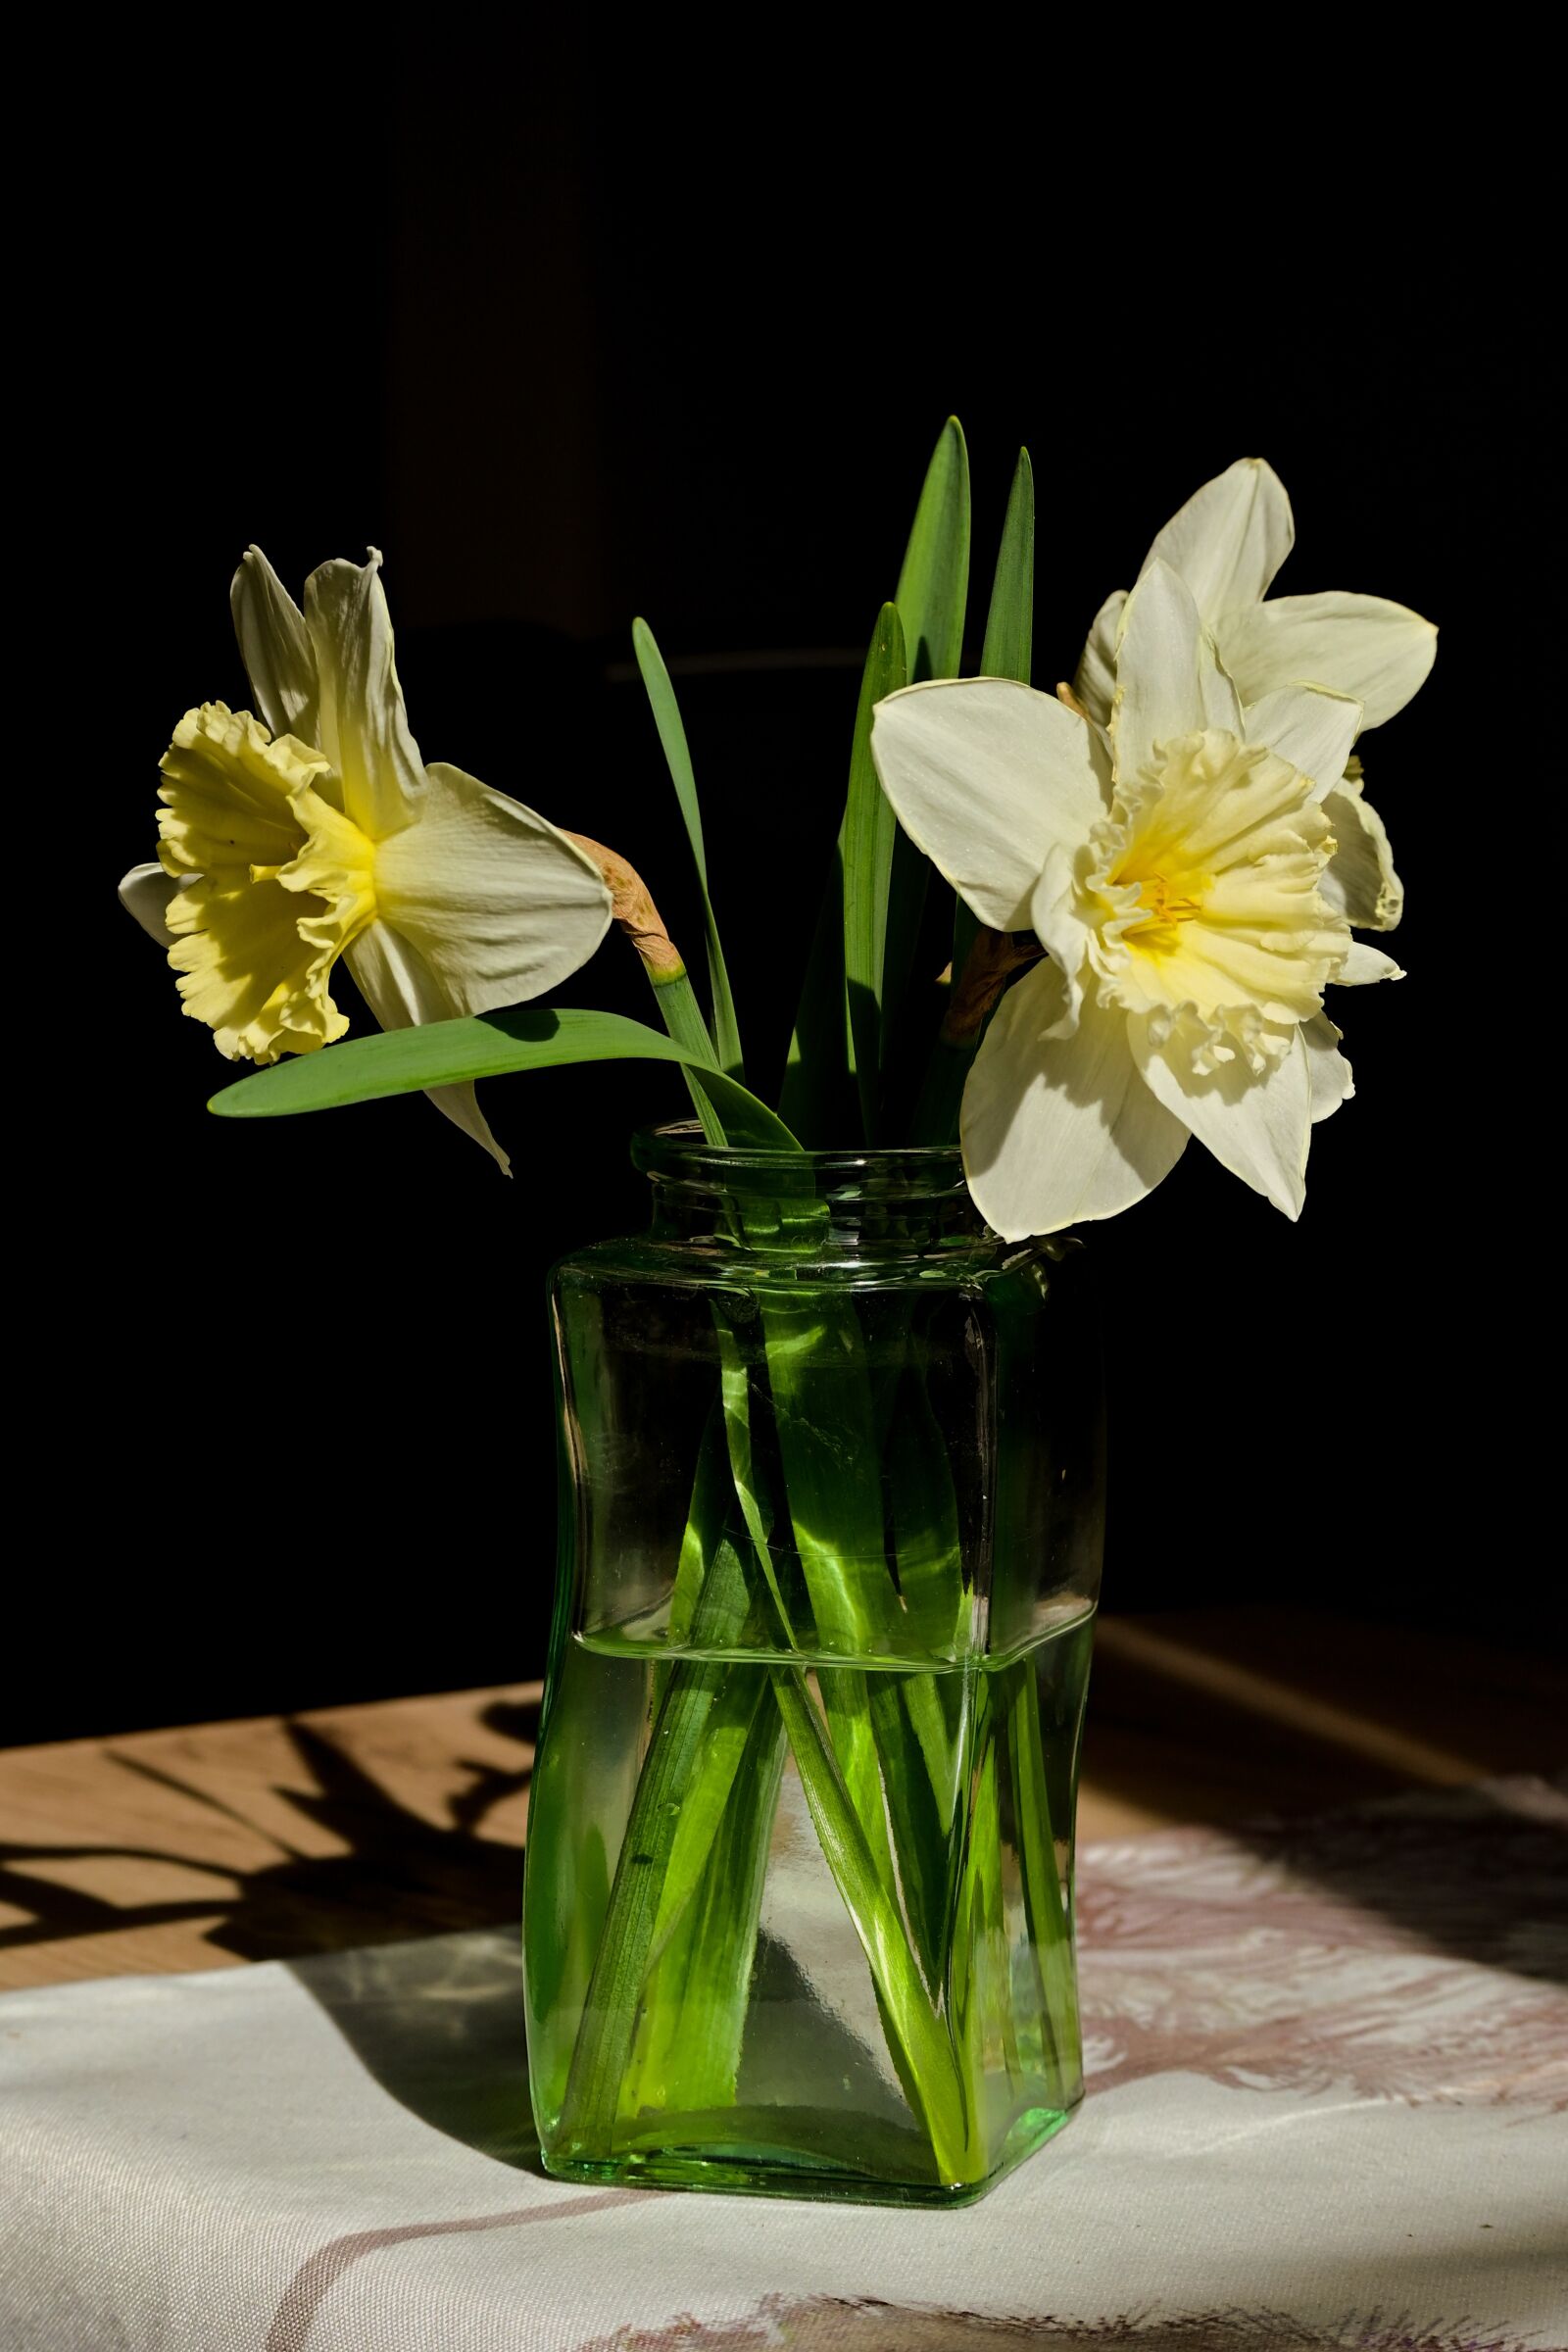 Nikon Nikkor Z DX 50-250mm F4.5-6.3 VR sample photo. Daffodils, vase, spring photography